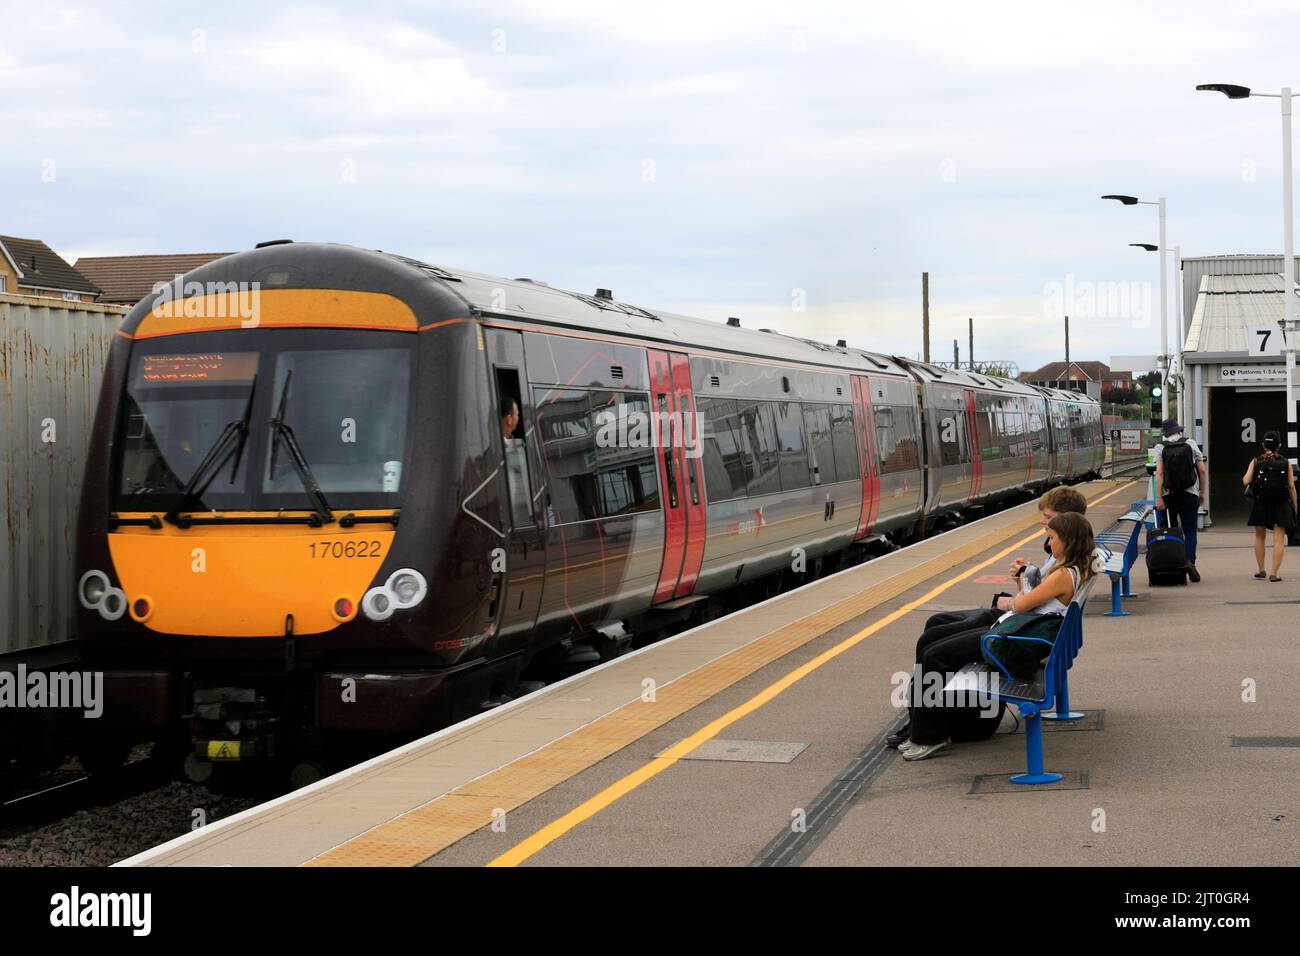 C2C 170622 à la gare de Peterborough, East Coast main Line Railway; Cambridgeshire, Angleterre, Royaume-Uni Banque D'Images